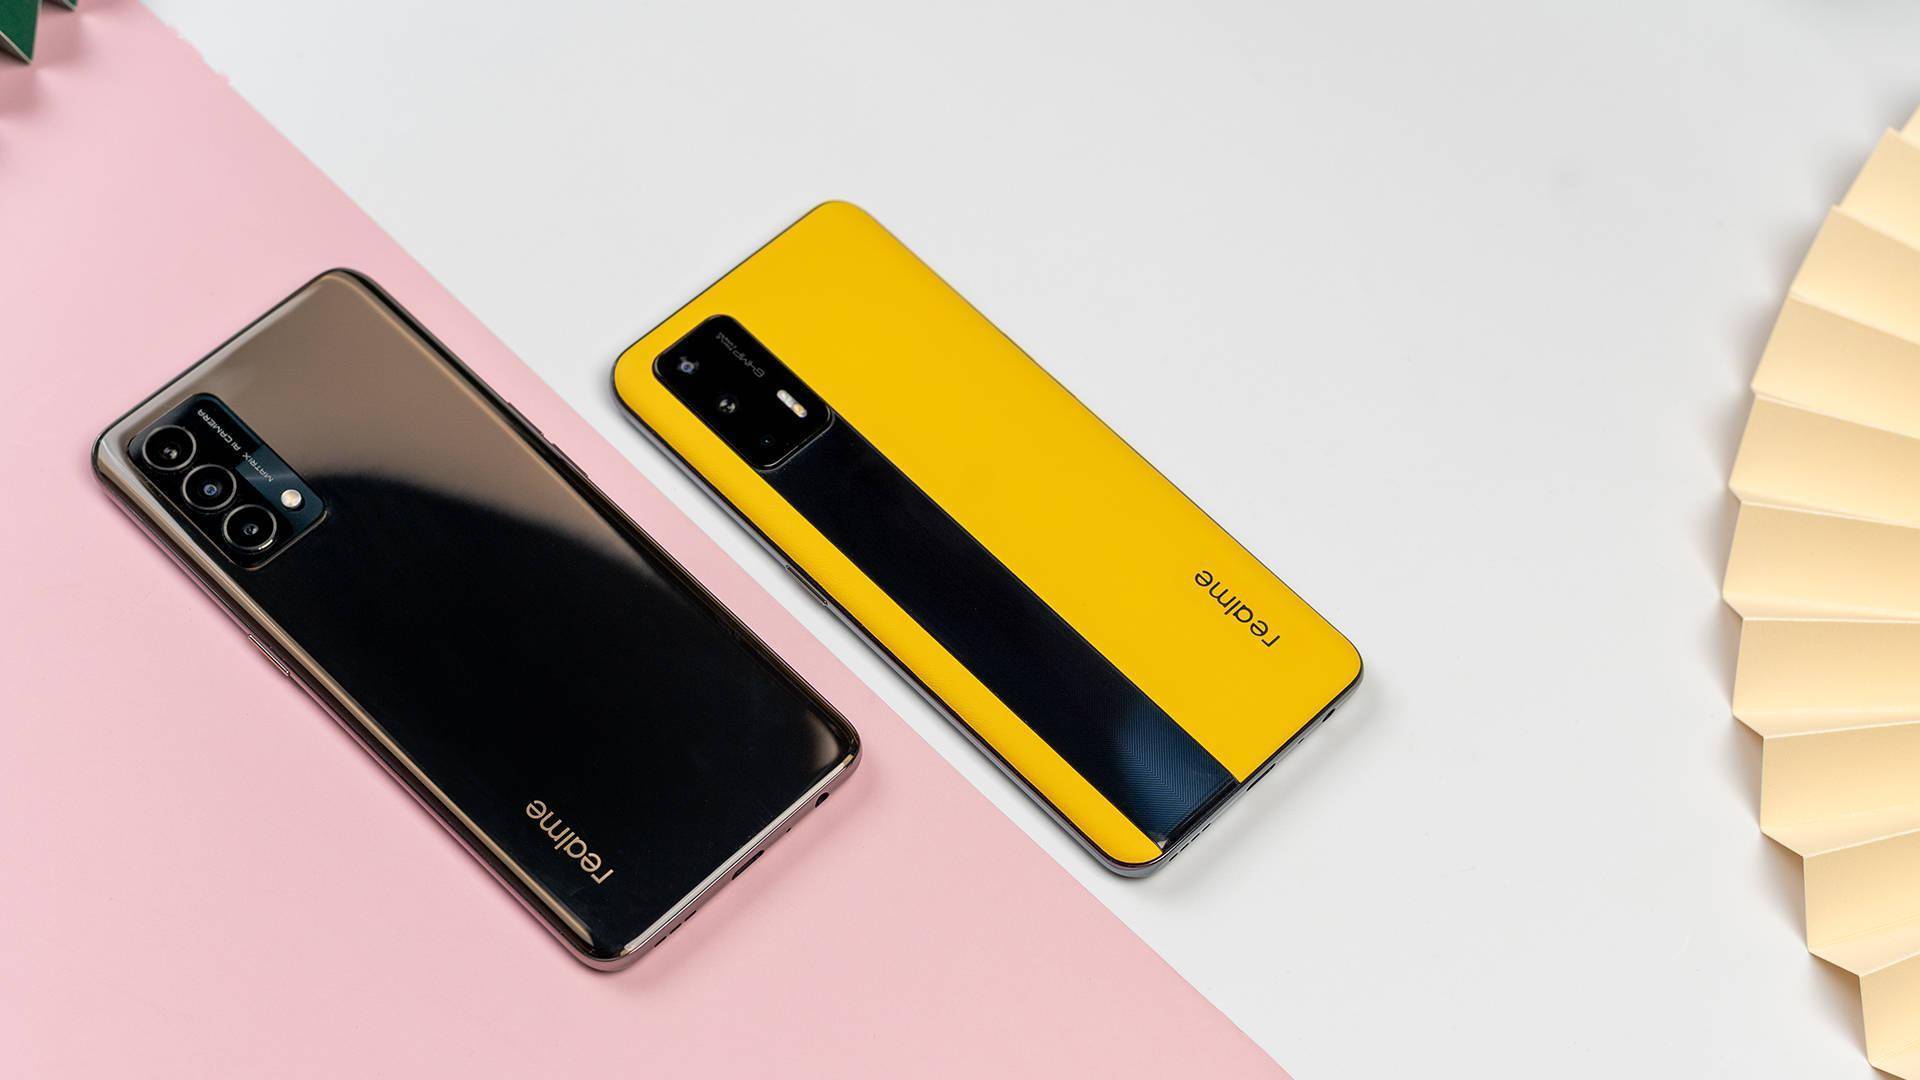 La serie Realme 9 sarà composta da quattro smartphone che arriveranno sul mercato a febbraio 2022